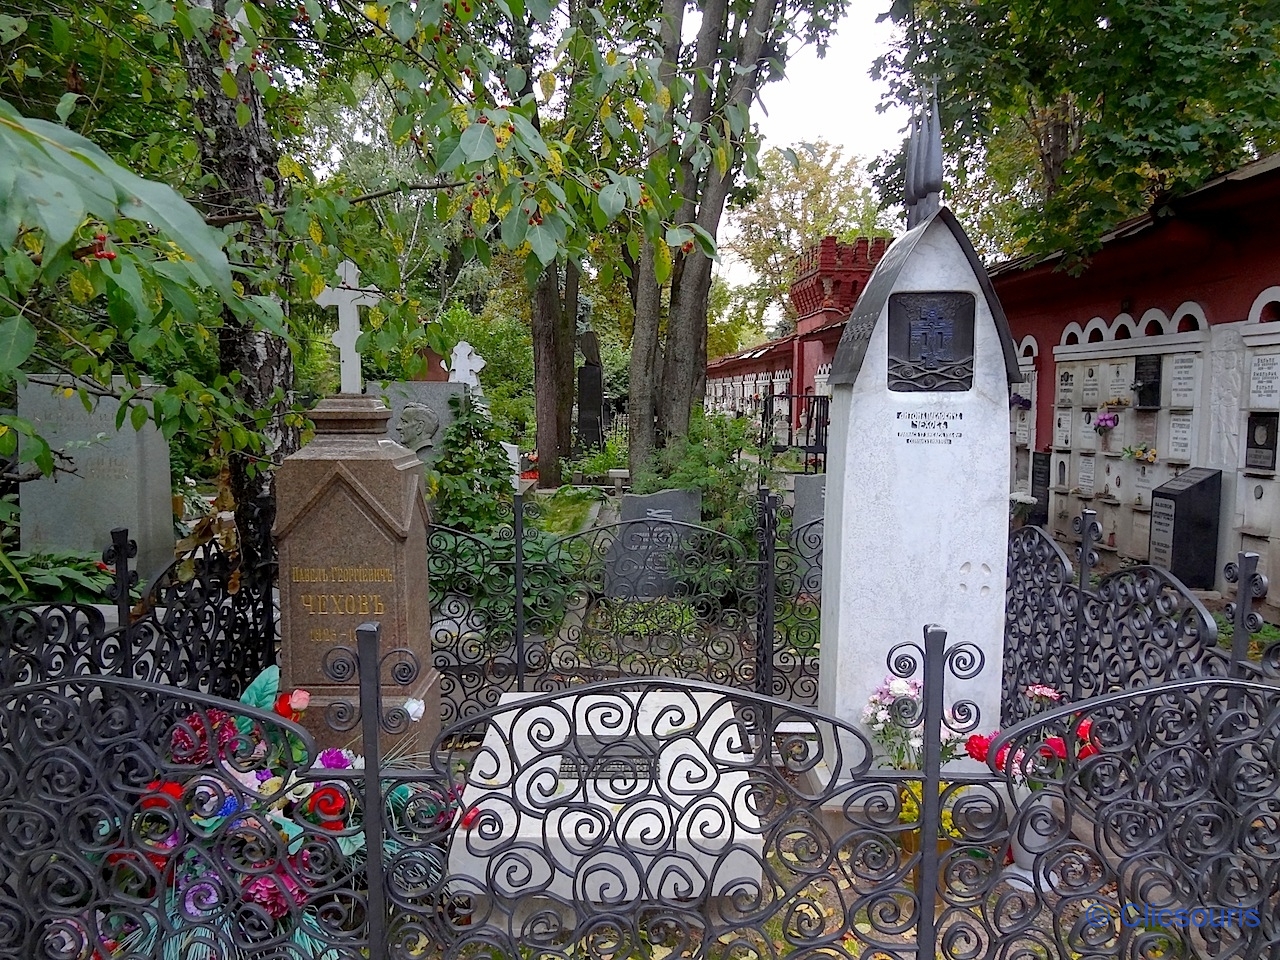 Moscou Novodievitchi cimetière